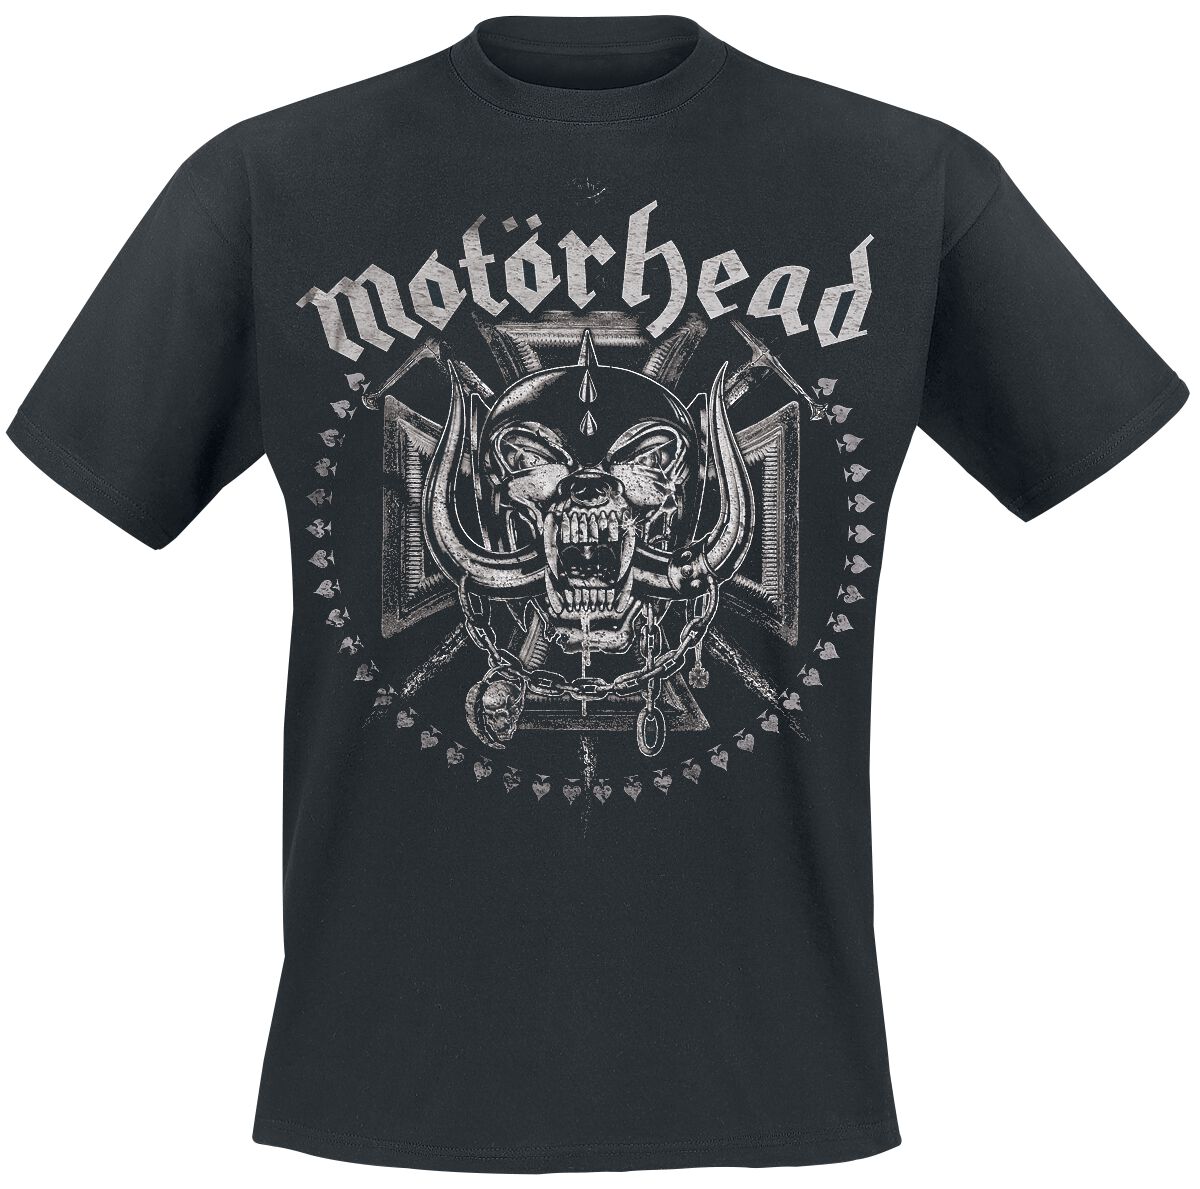 Motörhead T-Shirt - Iron Cross Swords - M bis XXL - für Männer - Größe XXL - schwarz  - EMP exklusives Merchandise!